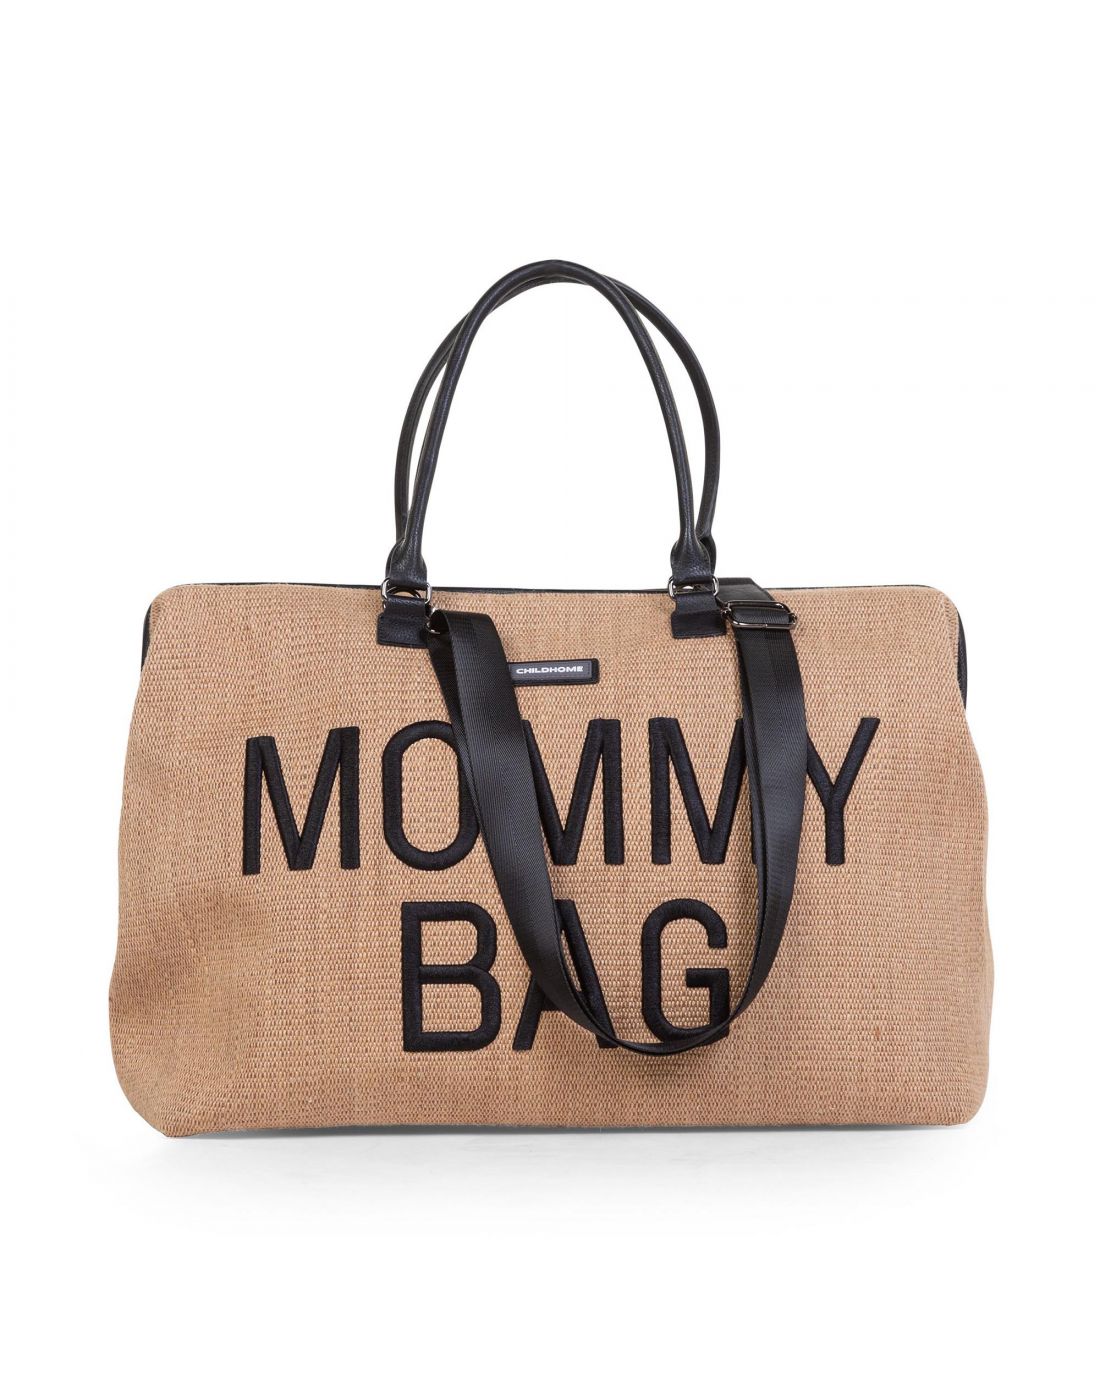 Τσάντα αλλαγής Childhome Mommy Bag Large Raffia, Childhome, BR77379 |  LapinKids.com | LAPIN KIDS